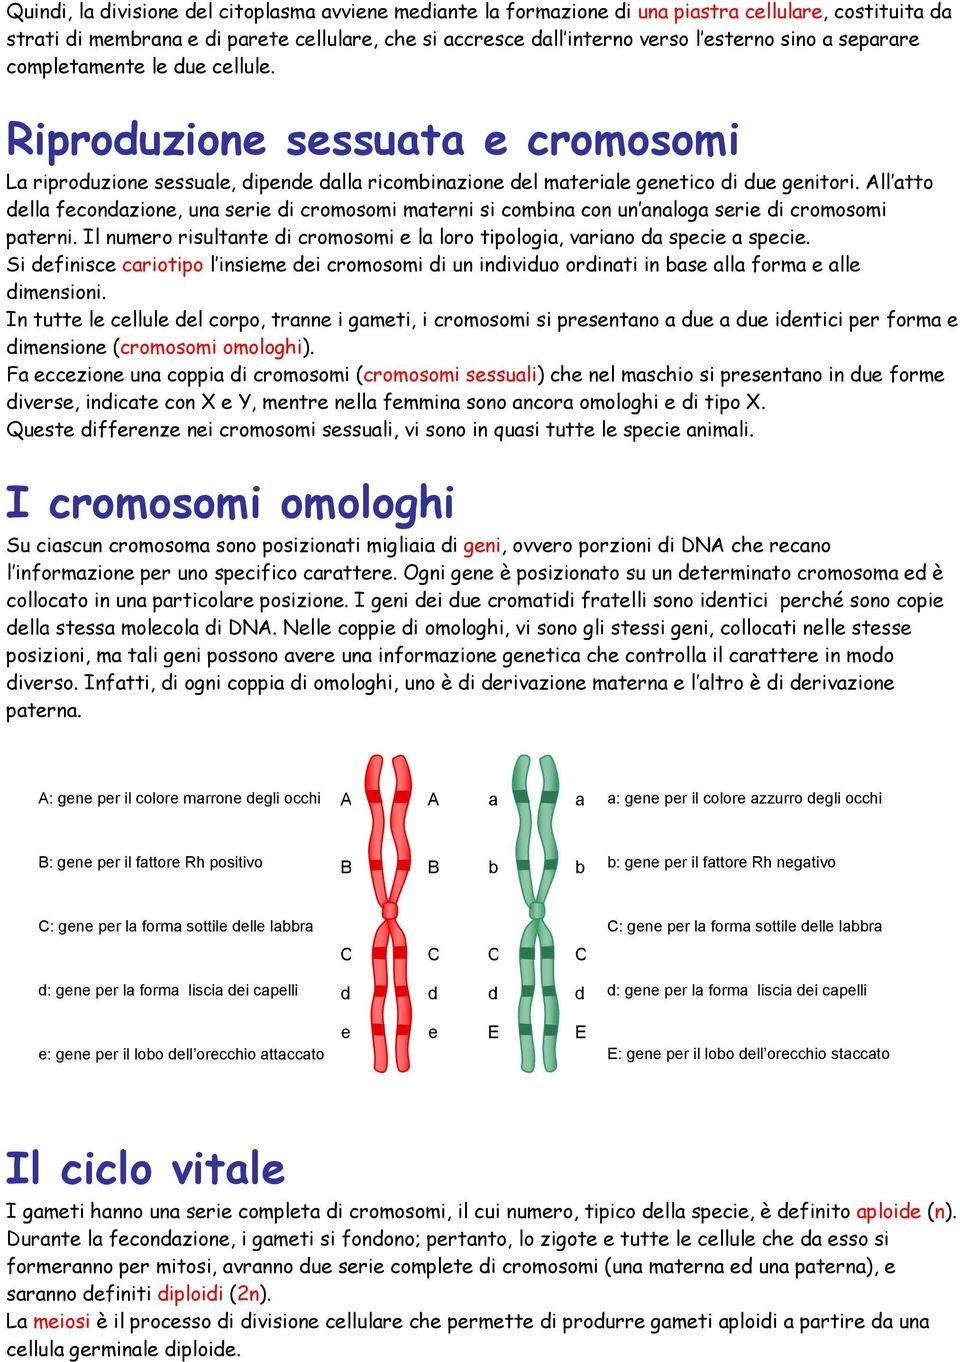 All atto della fecondazione, una serie di cromosomi materni si combina con un analoga serie di cromosomi paterni. Il numero risultante di cromosomi e la loro tipologia, variano da specie a specie.